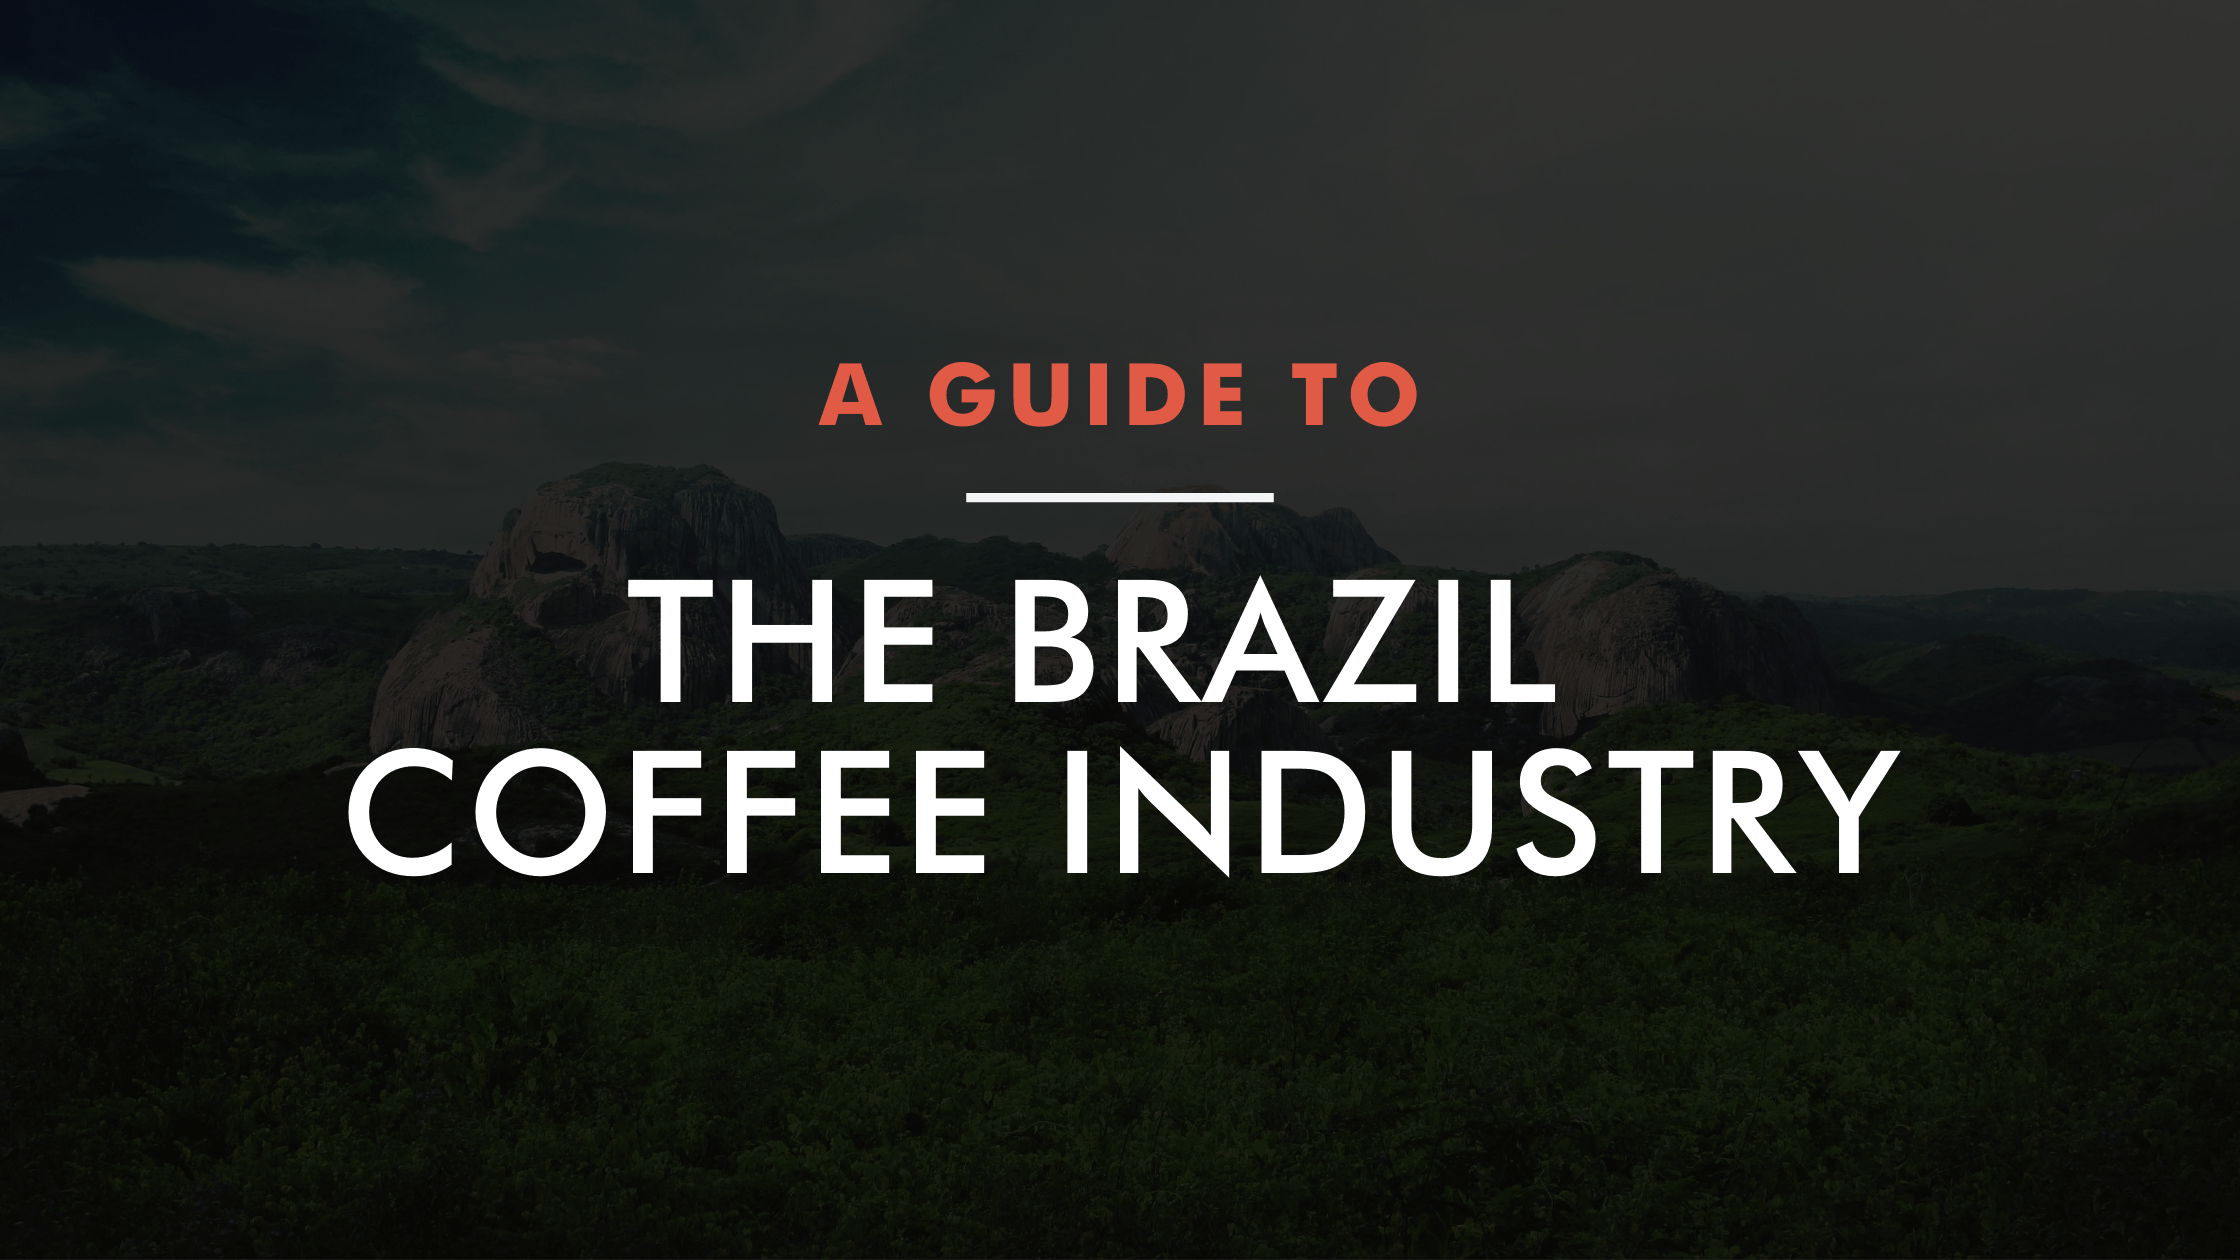 Brazil's Coffee Industry